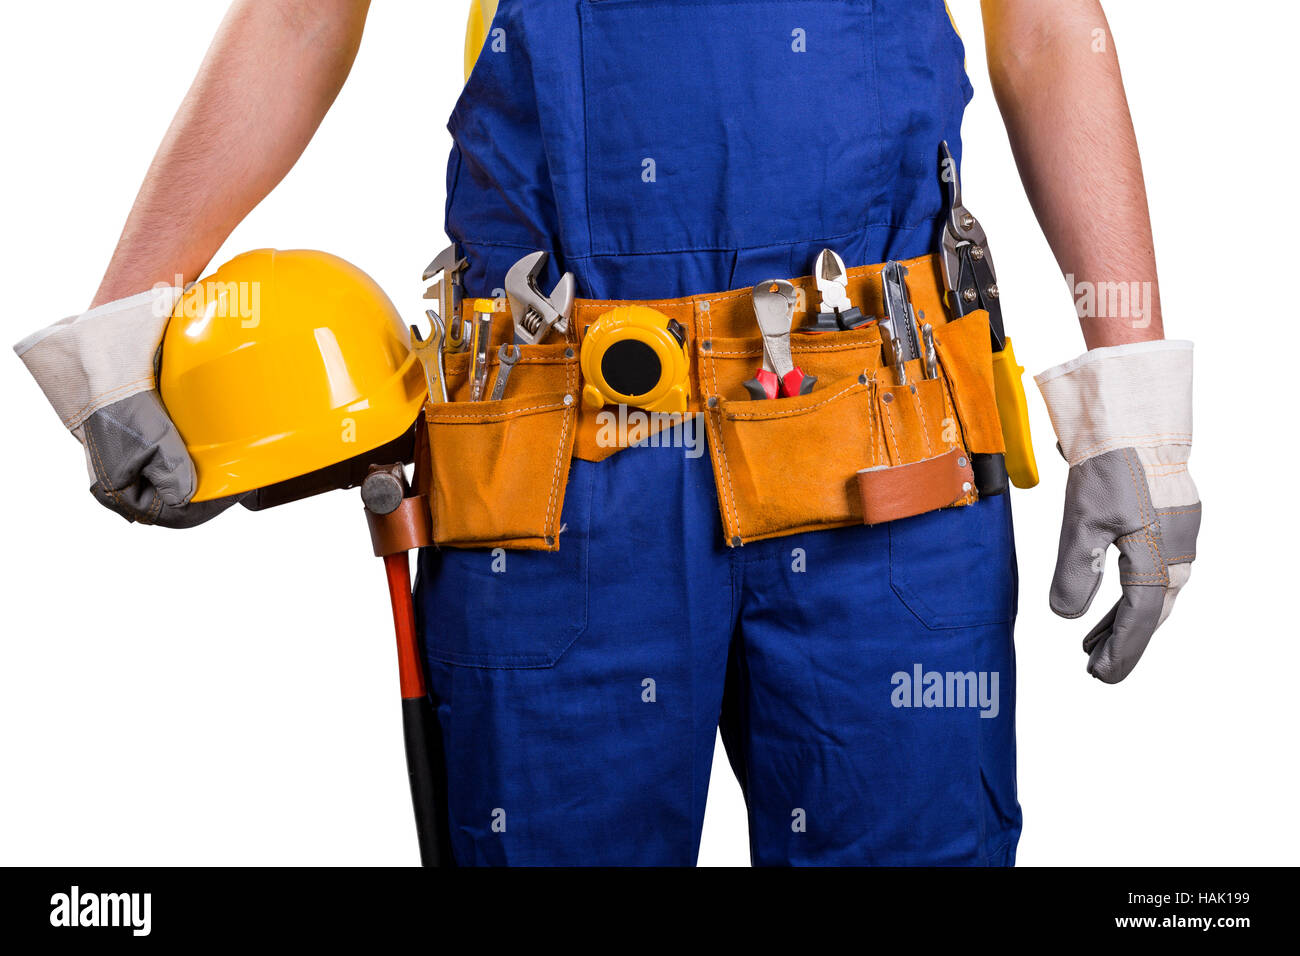 Travailleur de la construction avec ceinture d'outils isolated on white Banque D'Images